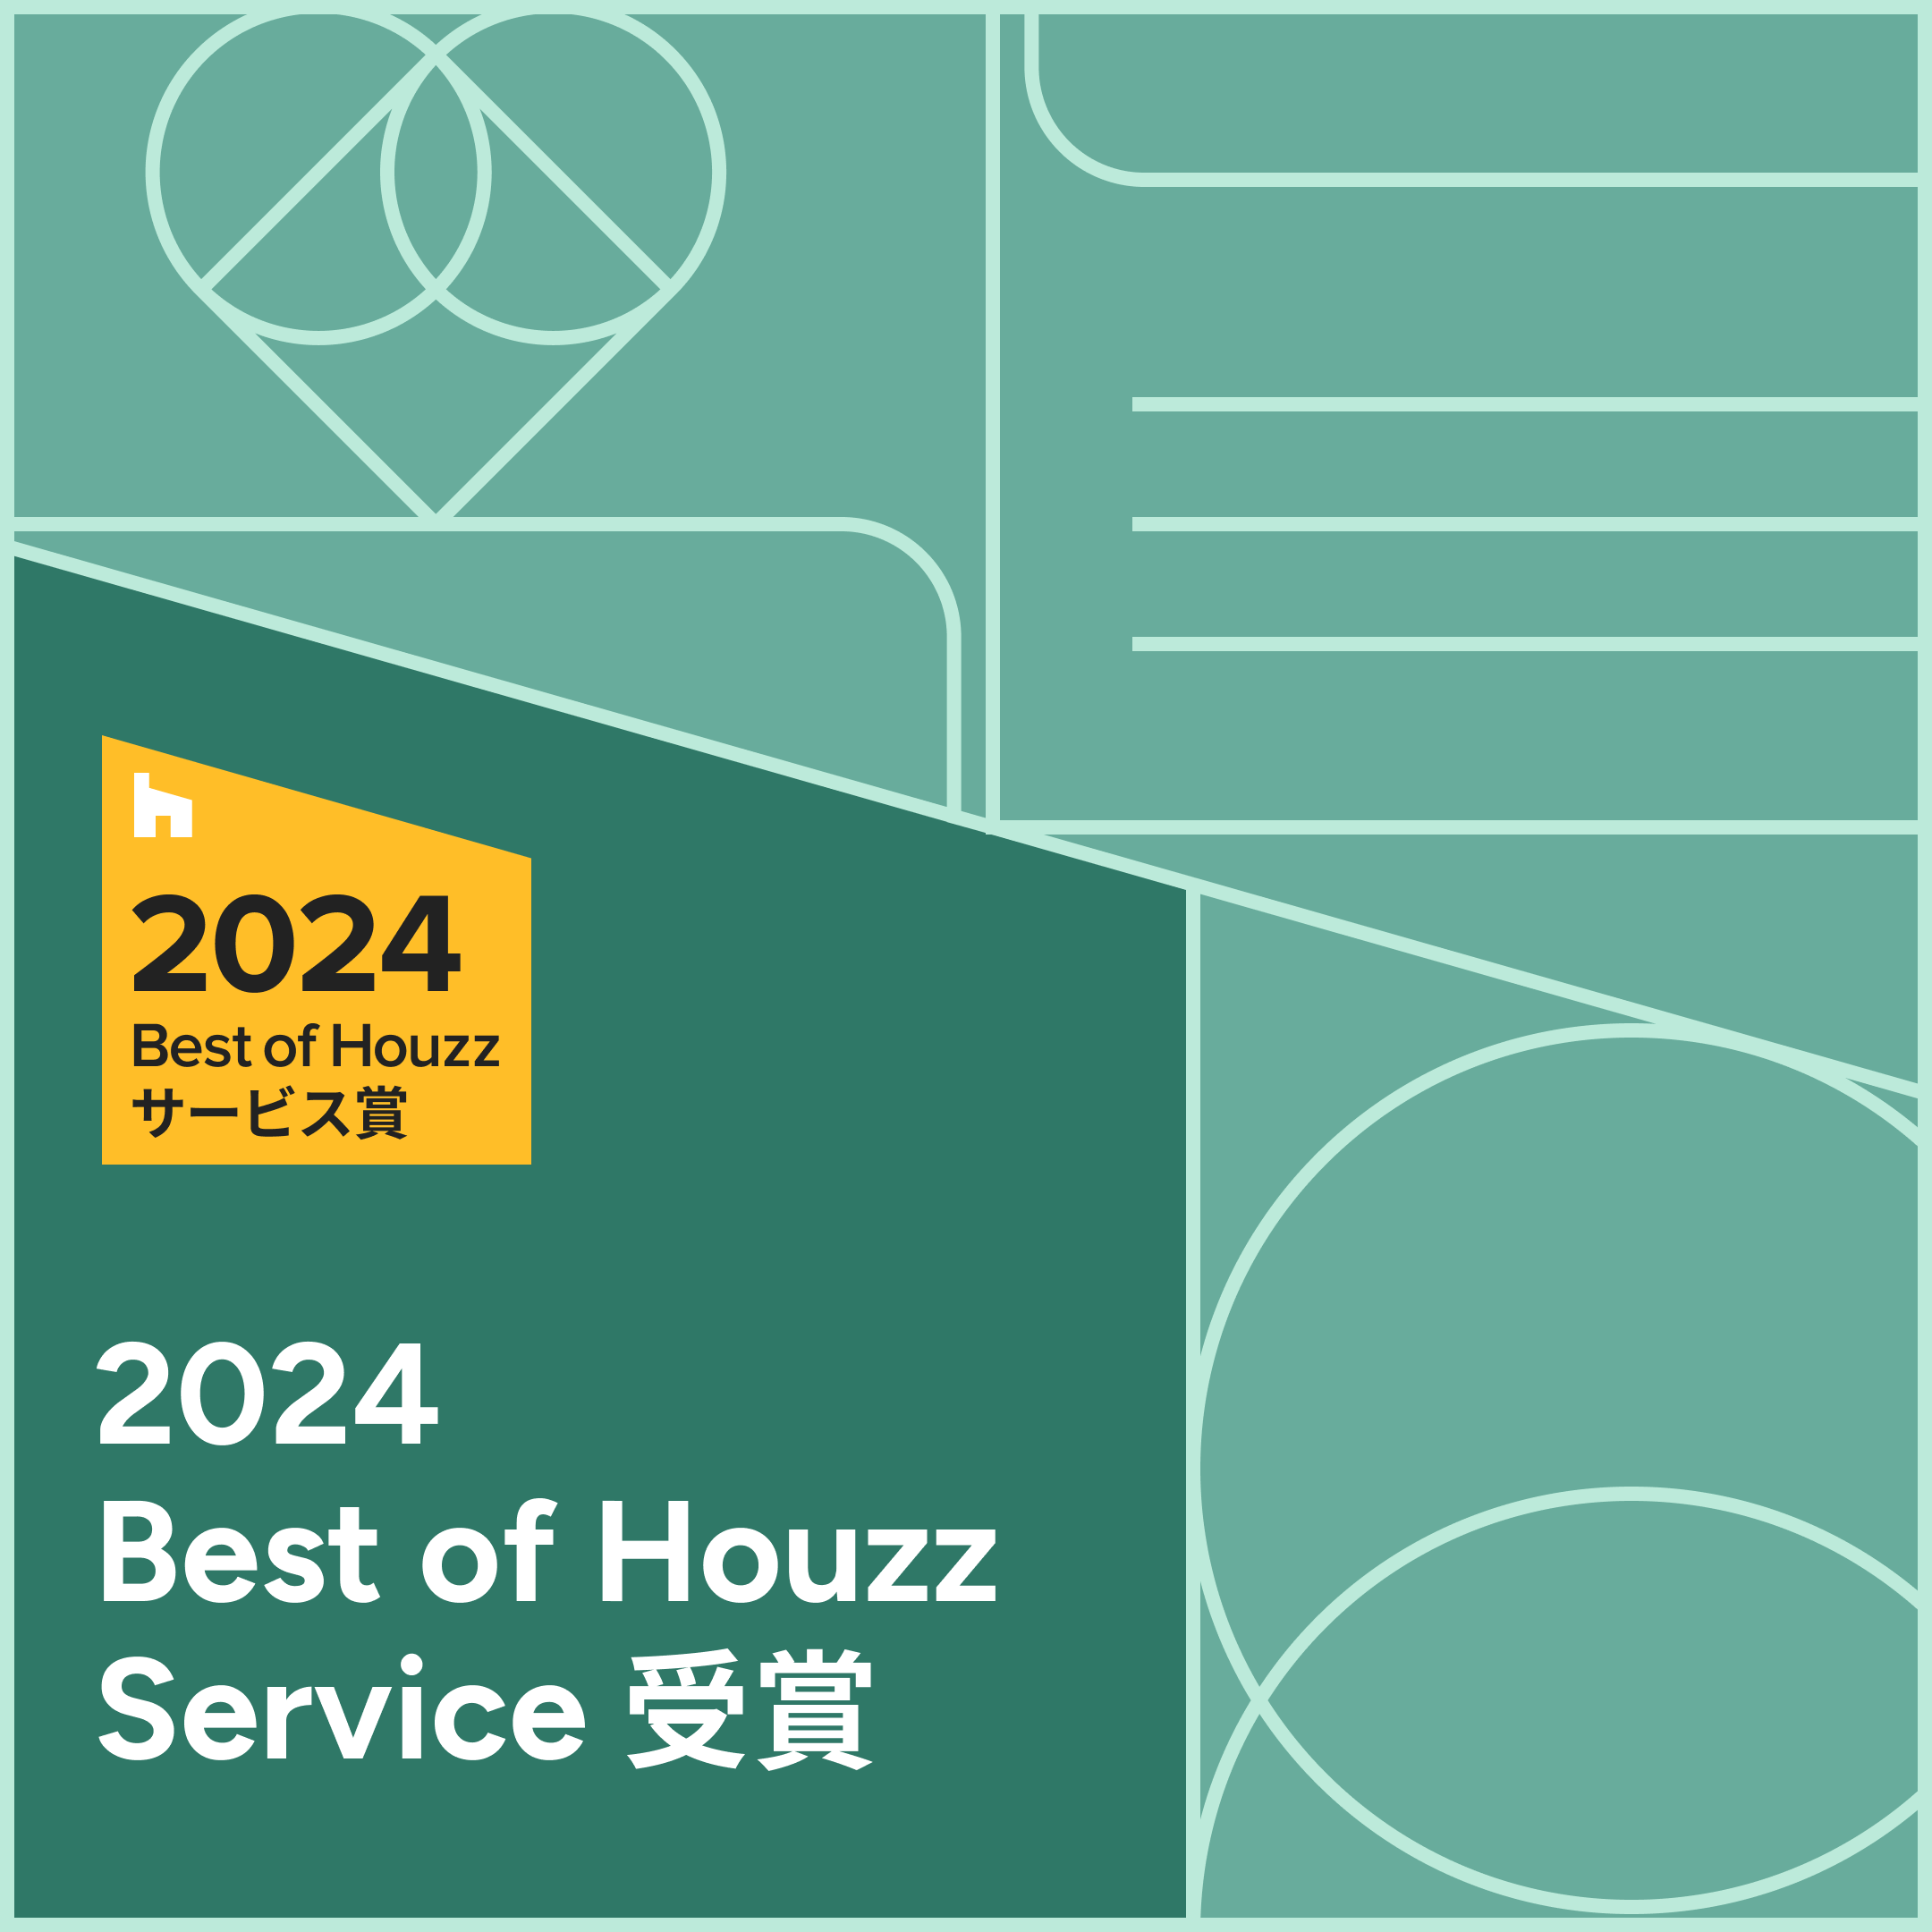 Best of Houzz 2024 を受賞しました！